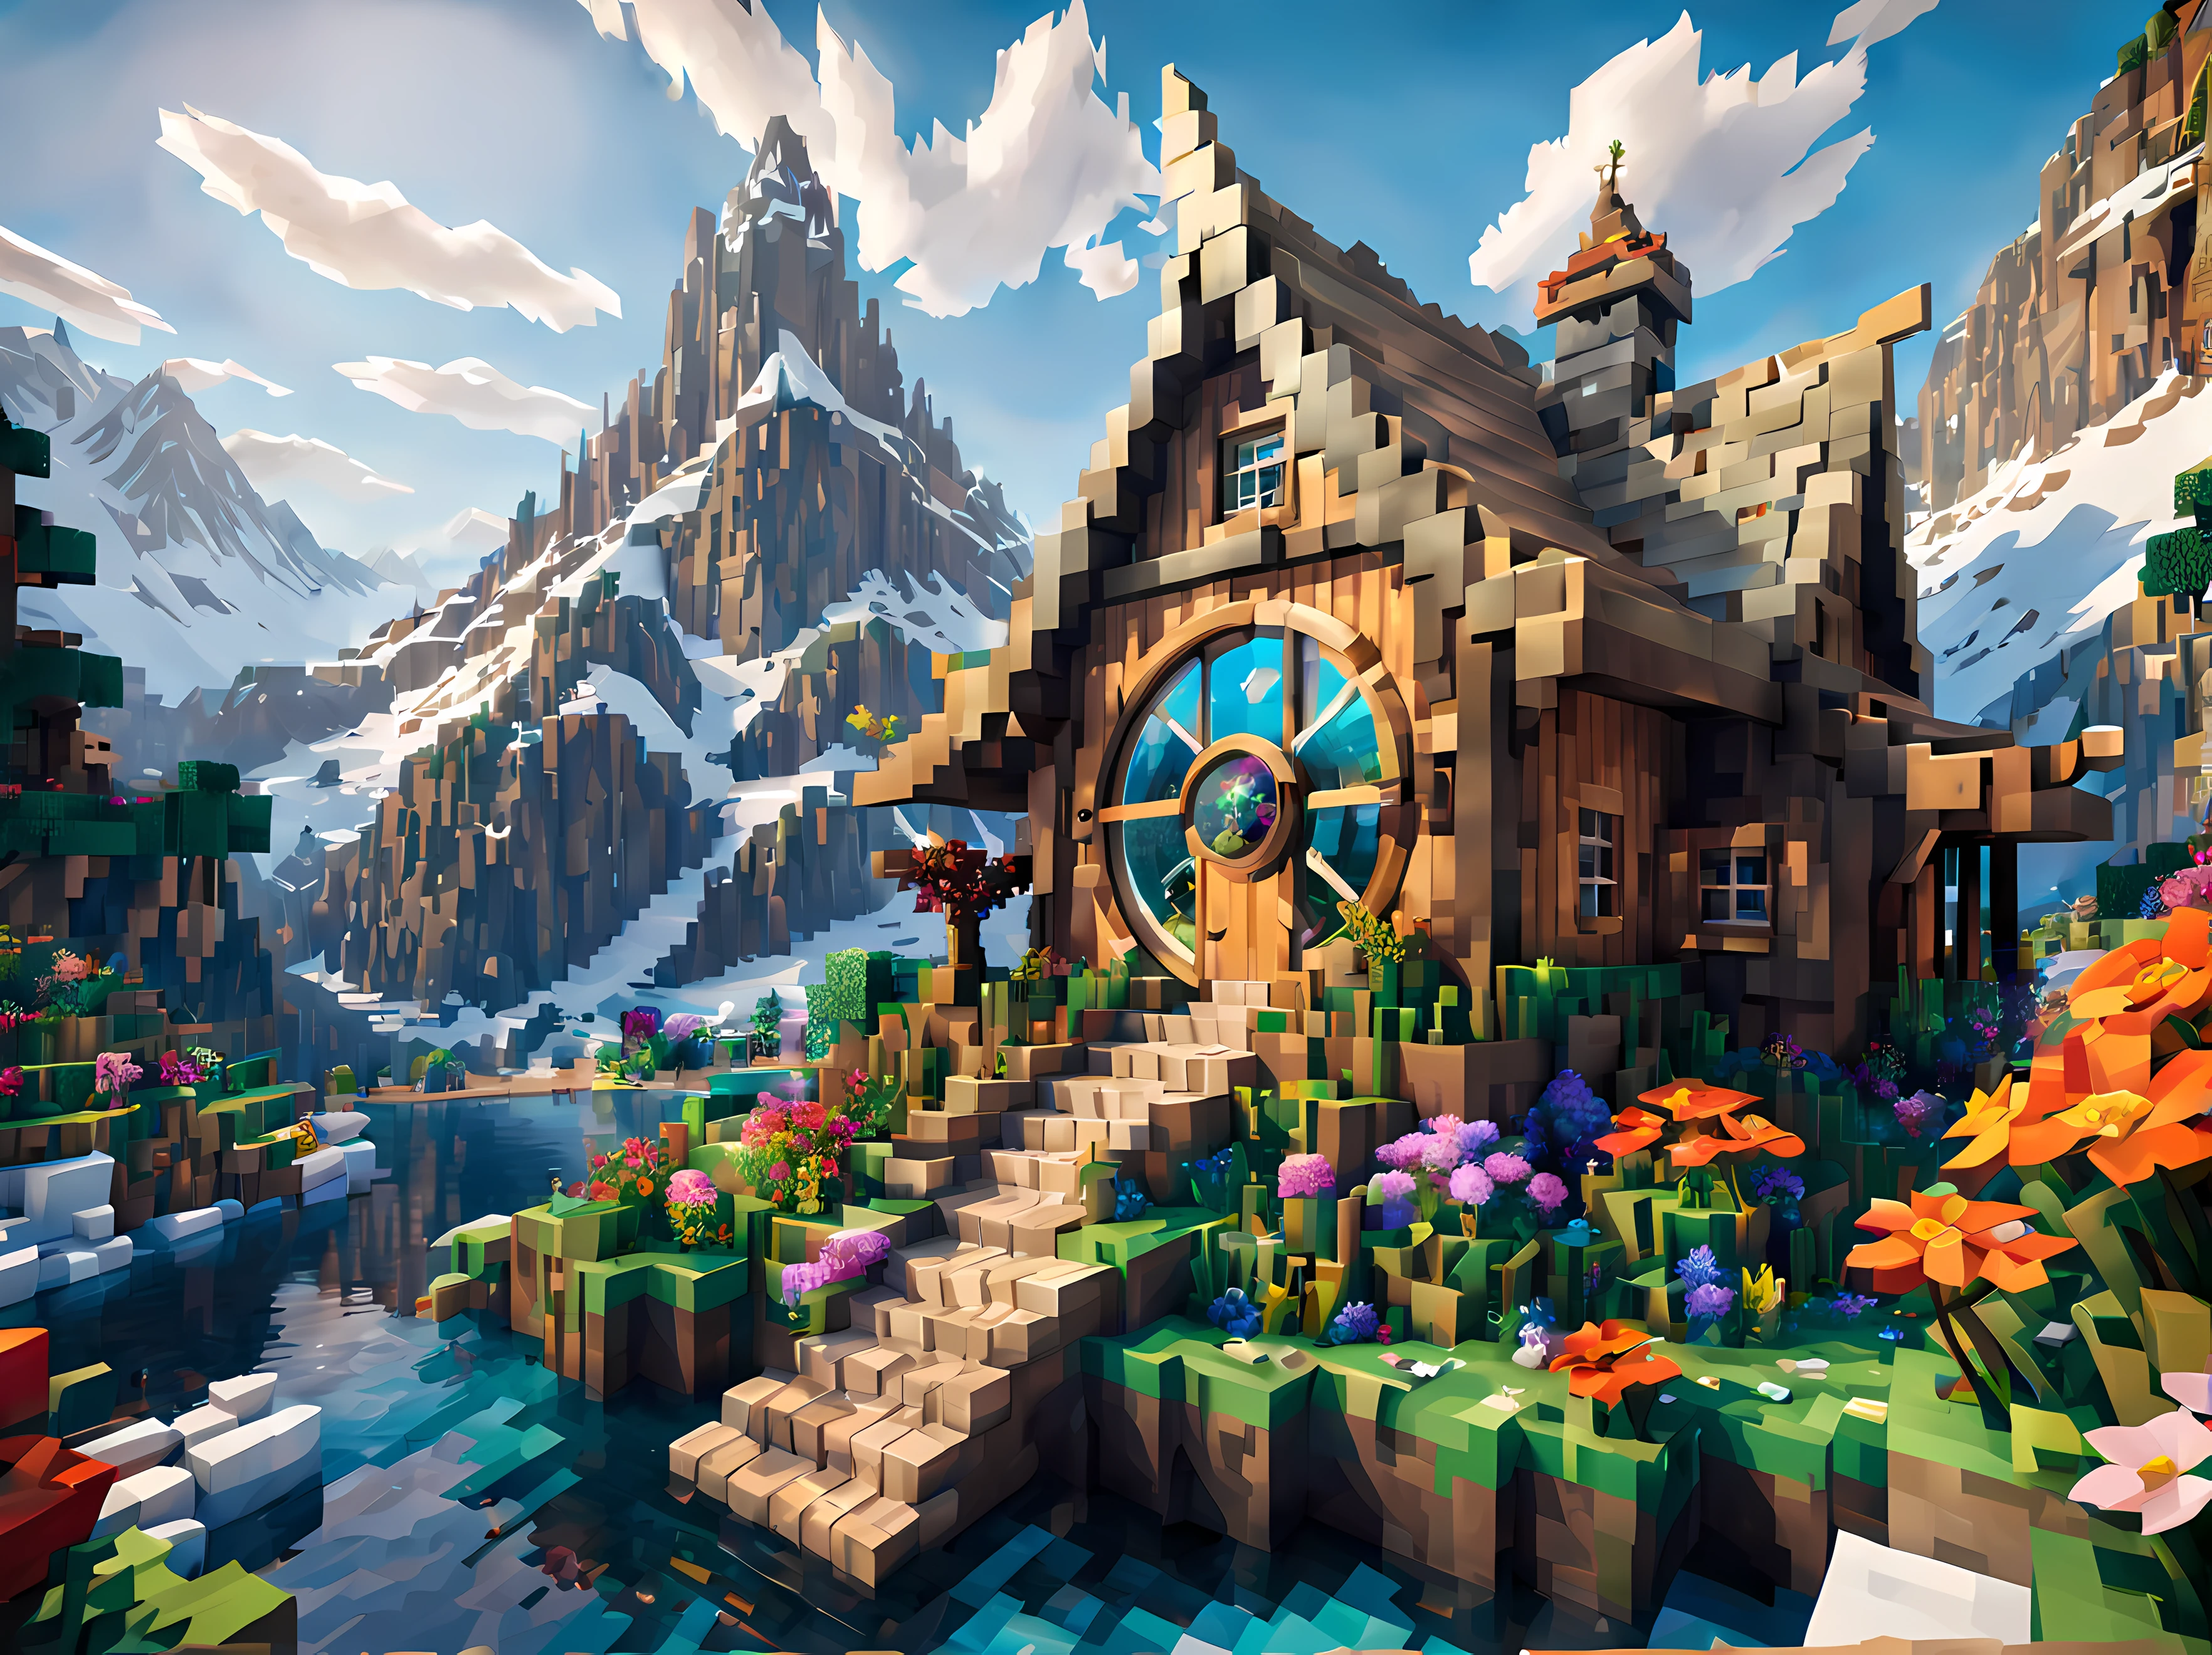 Minecraft-Stil (ultrarealistisch:1.3), groß (Fee) Kabine mit runden Fenstern, Umweltkunstwork, Umweltkunst, elegante Dekorationen, Fest, Pfund, (Angeln), (Schön:1.4), (attraktiv:1.3), epische schneebedeckte Berge, windig sommer natur, blockig, verpixelt, leuchtende Farben, (Drache im Himmel), Blumen